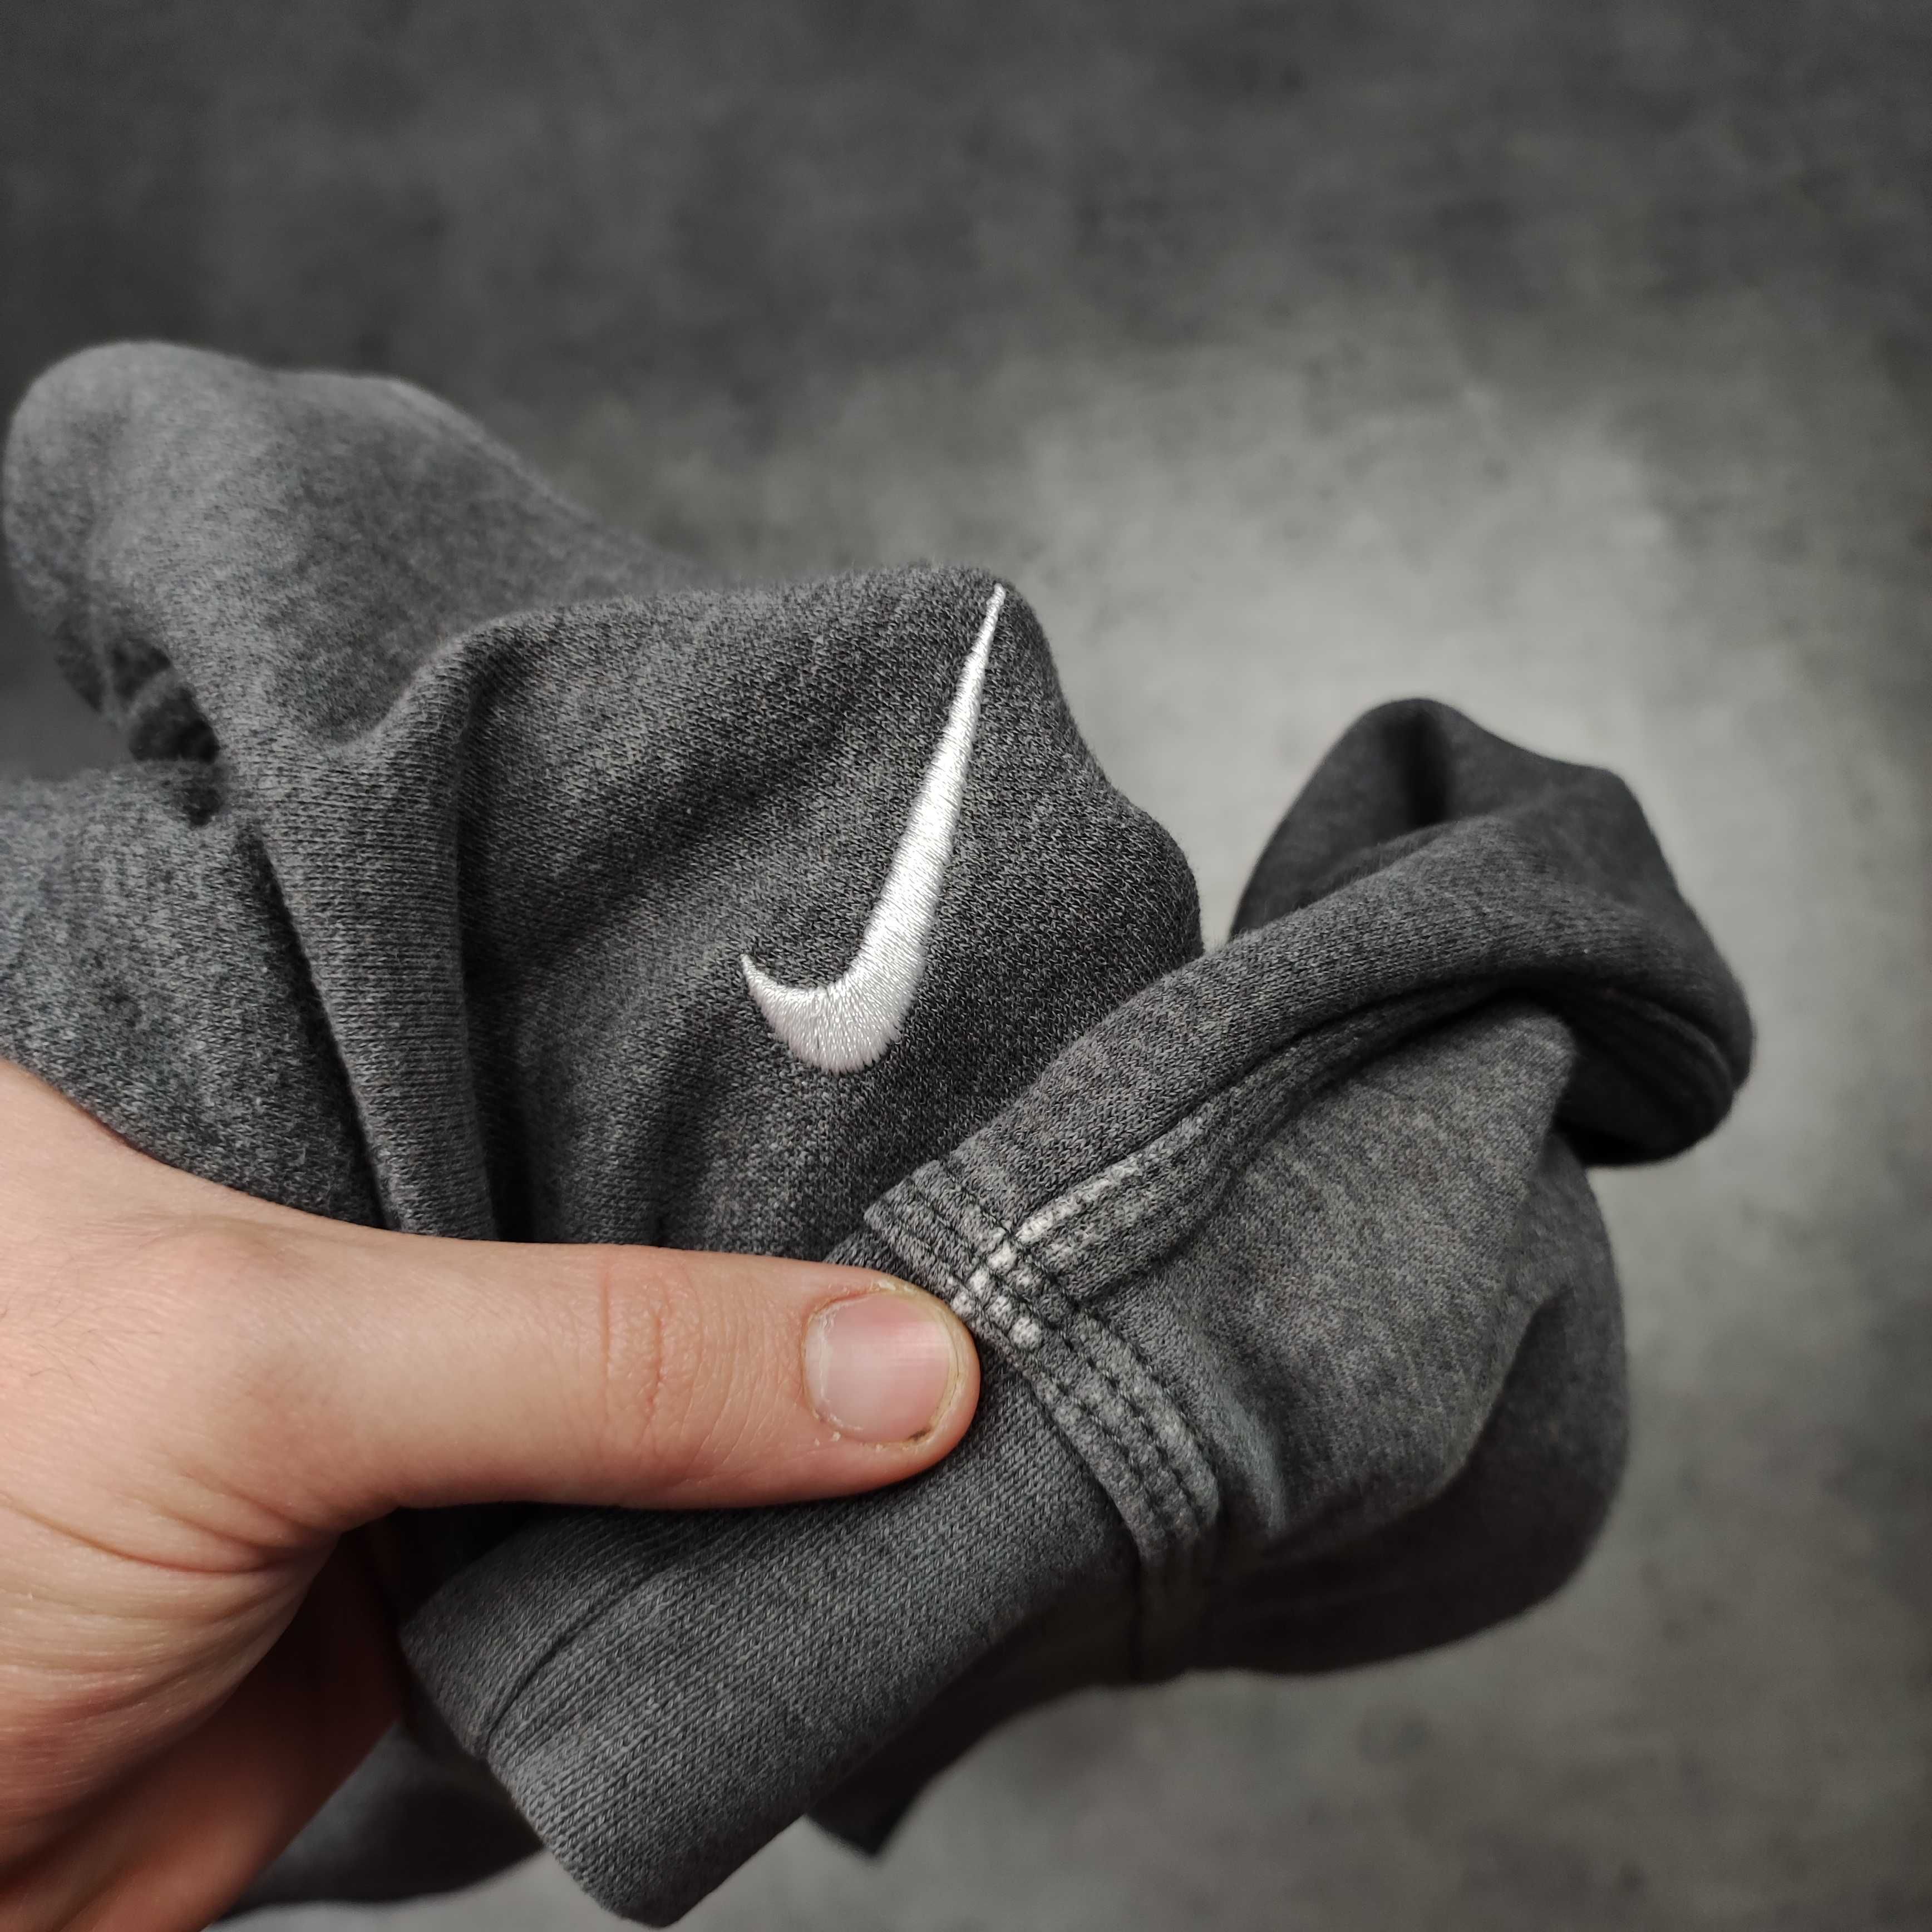 MĘSKA Bluza Sportowa Nike Bawełna Dresowa Hoodie z Kapturem Haft Logo